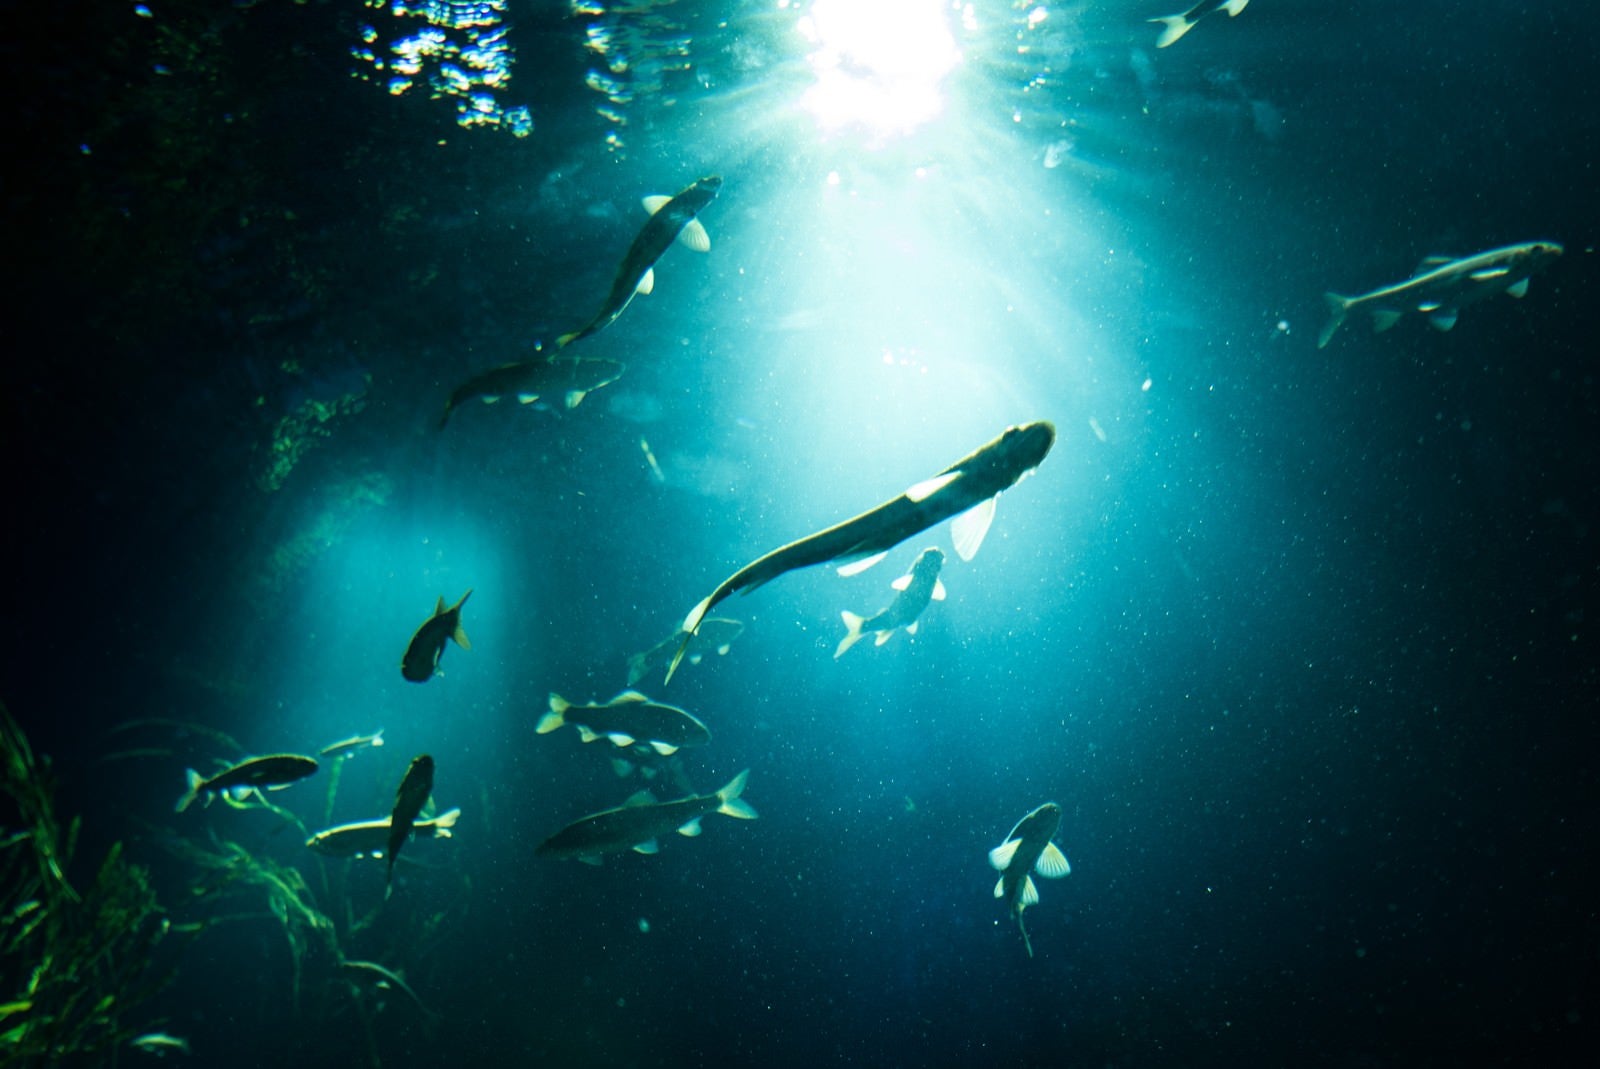 「日の光と魚のシルエット」の写真